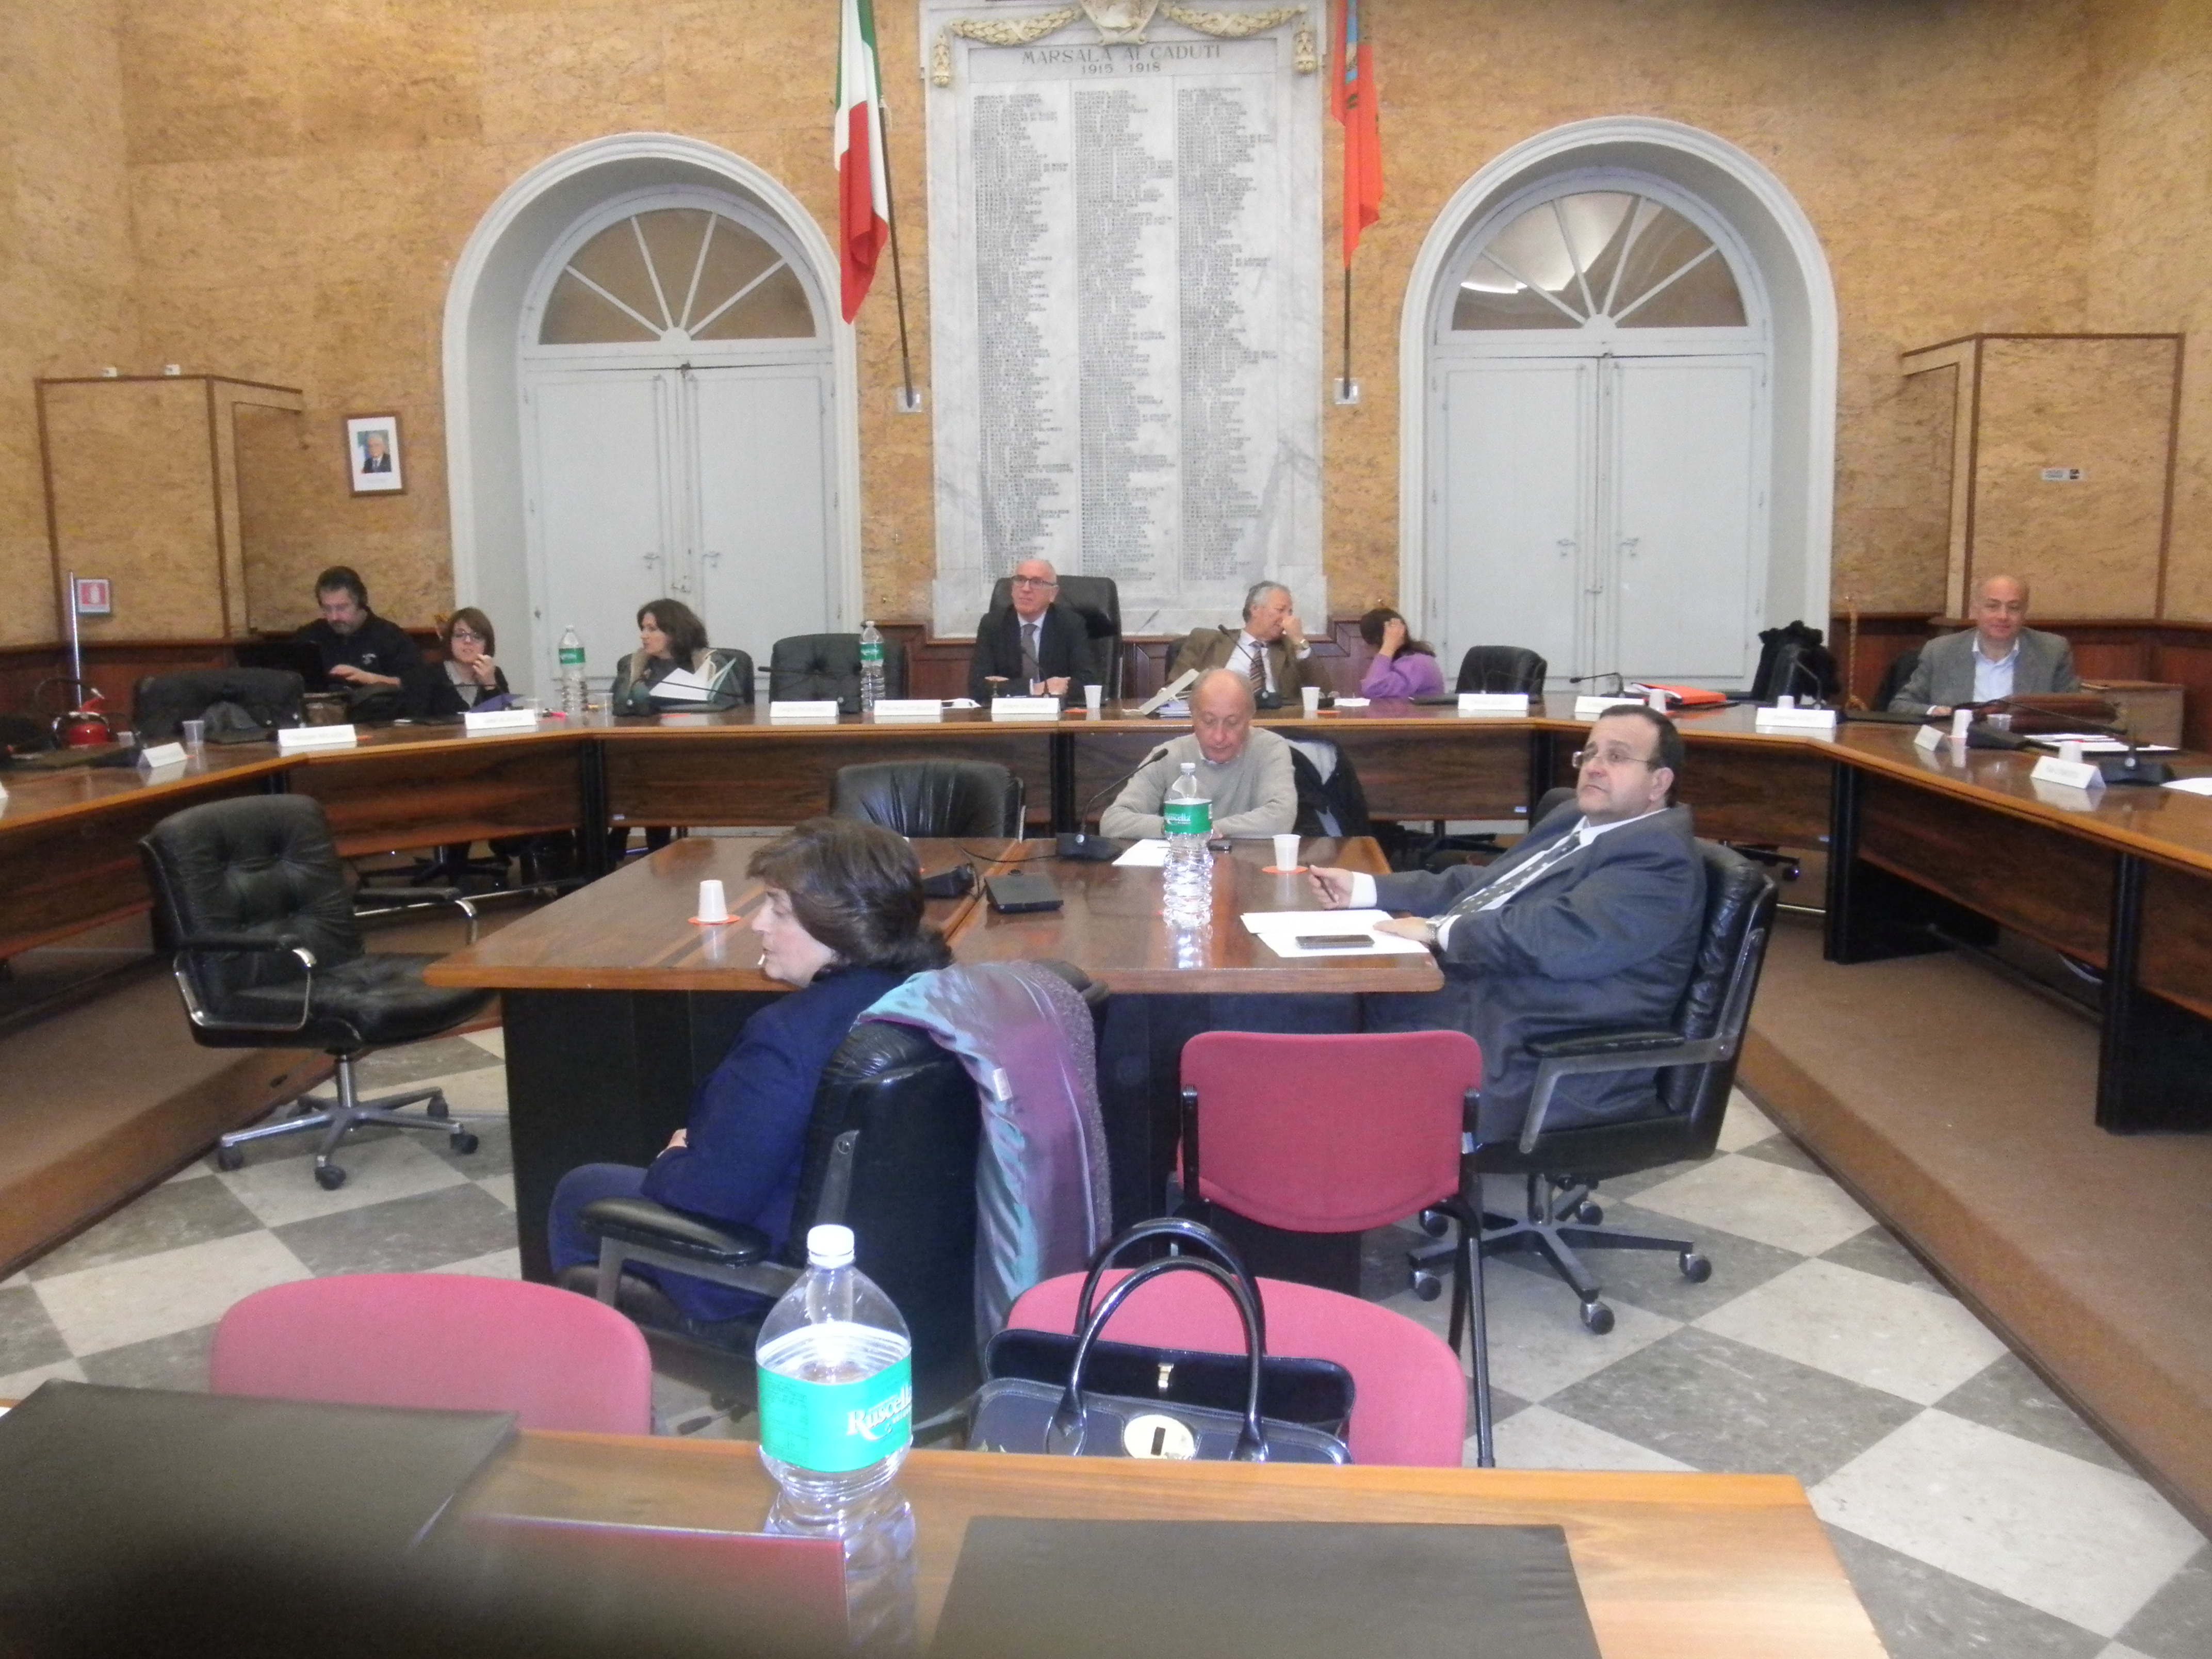 Consiglio comunale: approvati due atti di indirizzo. L’Udc attacca l’assessore Anna Maria Angileri